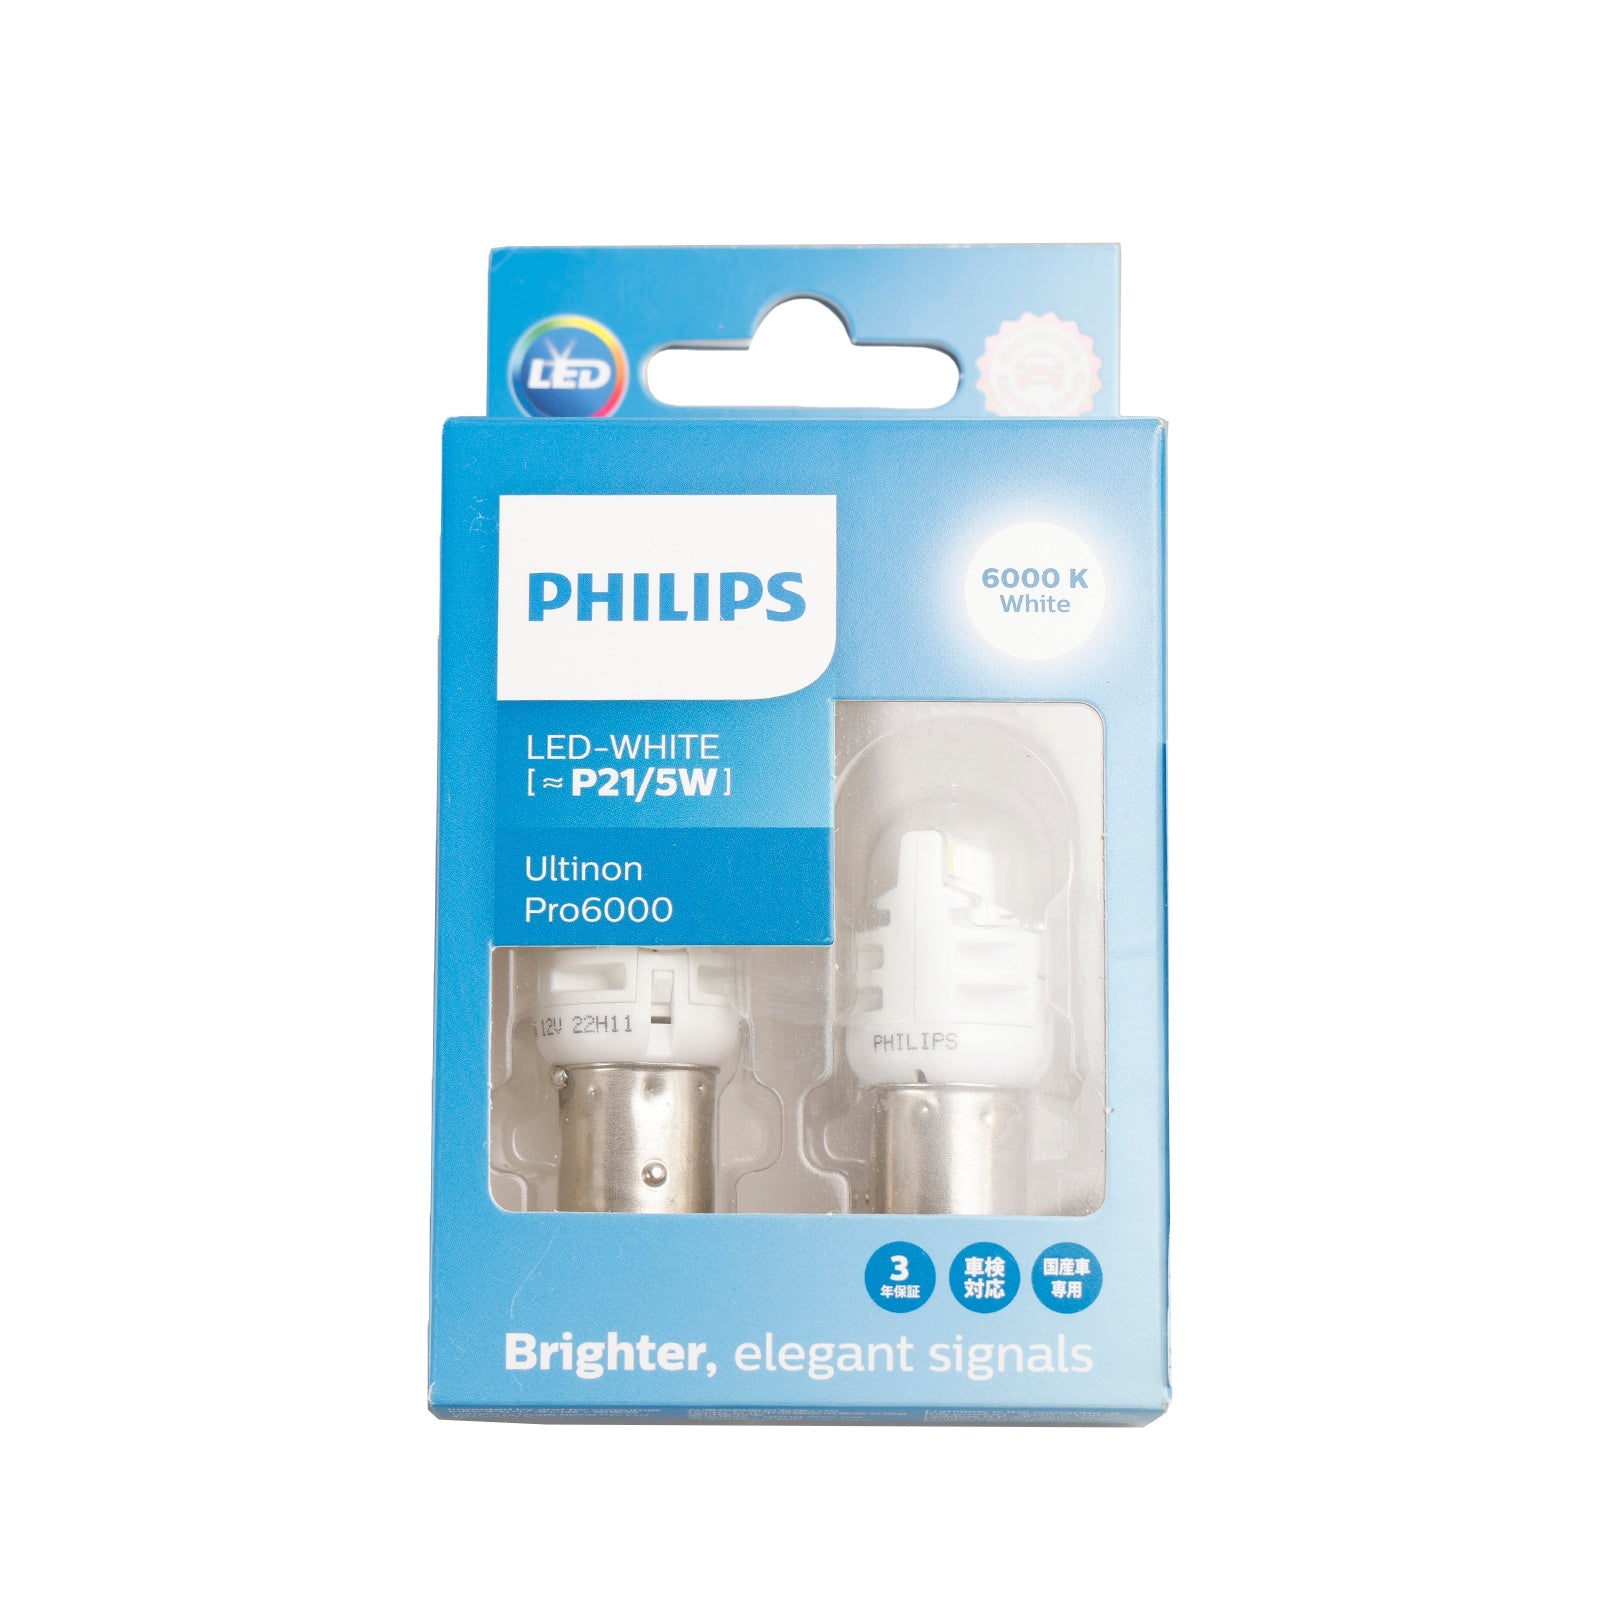 Pour Philips 11499CU60X2 Ultinon Pro6000 LED-BLANC P21/5W 6000K 250/50lm